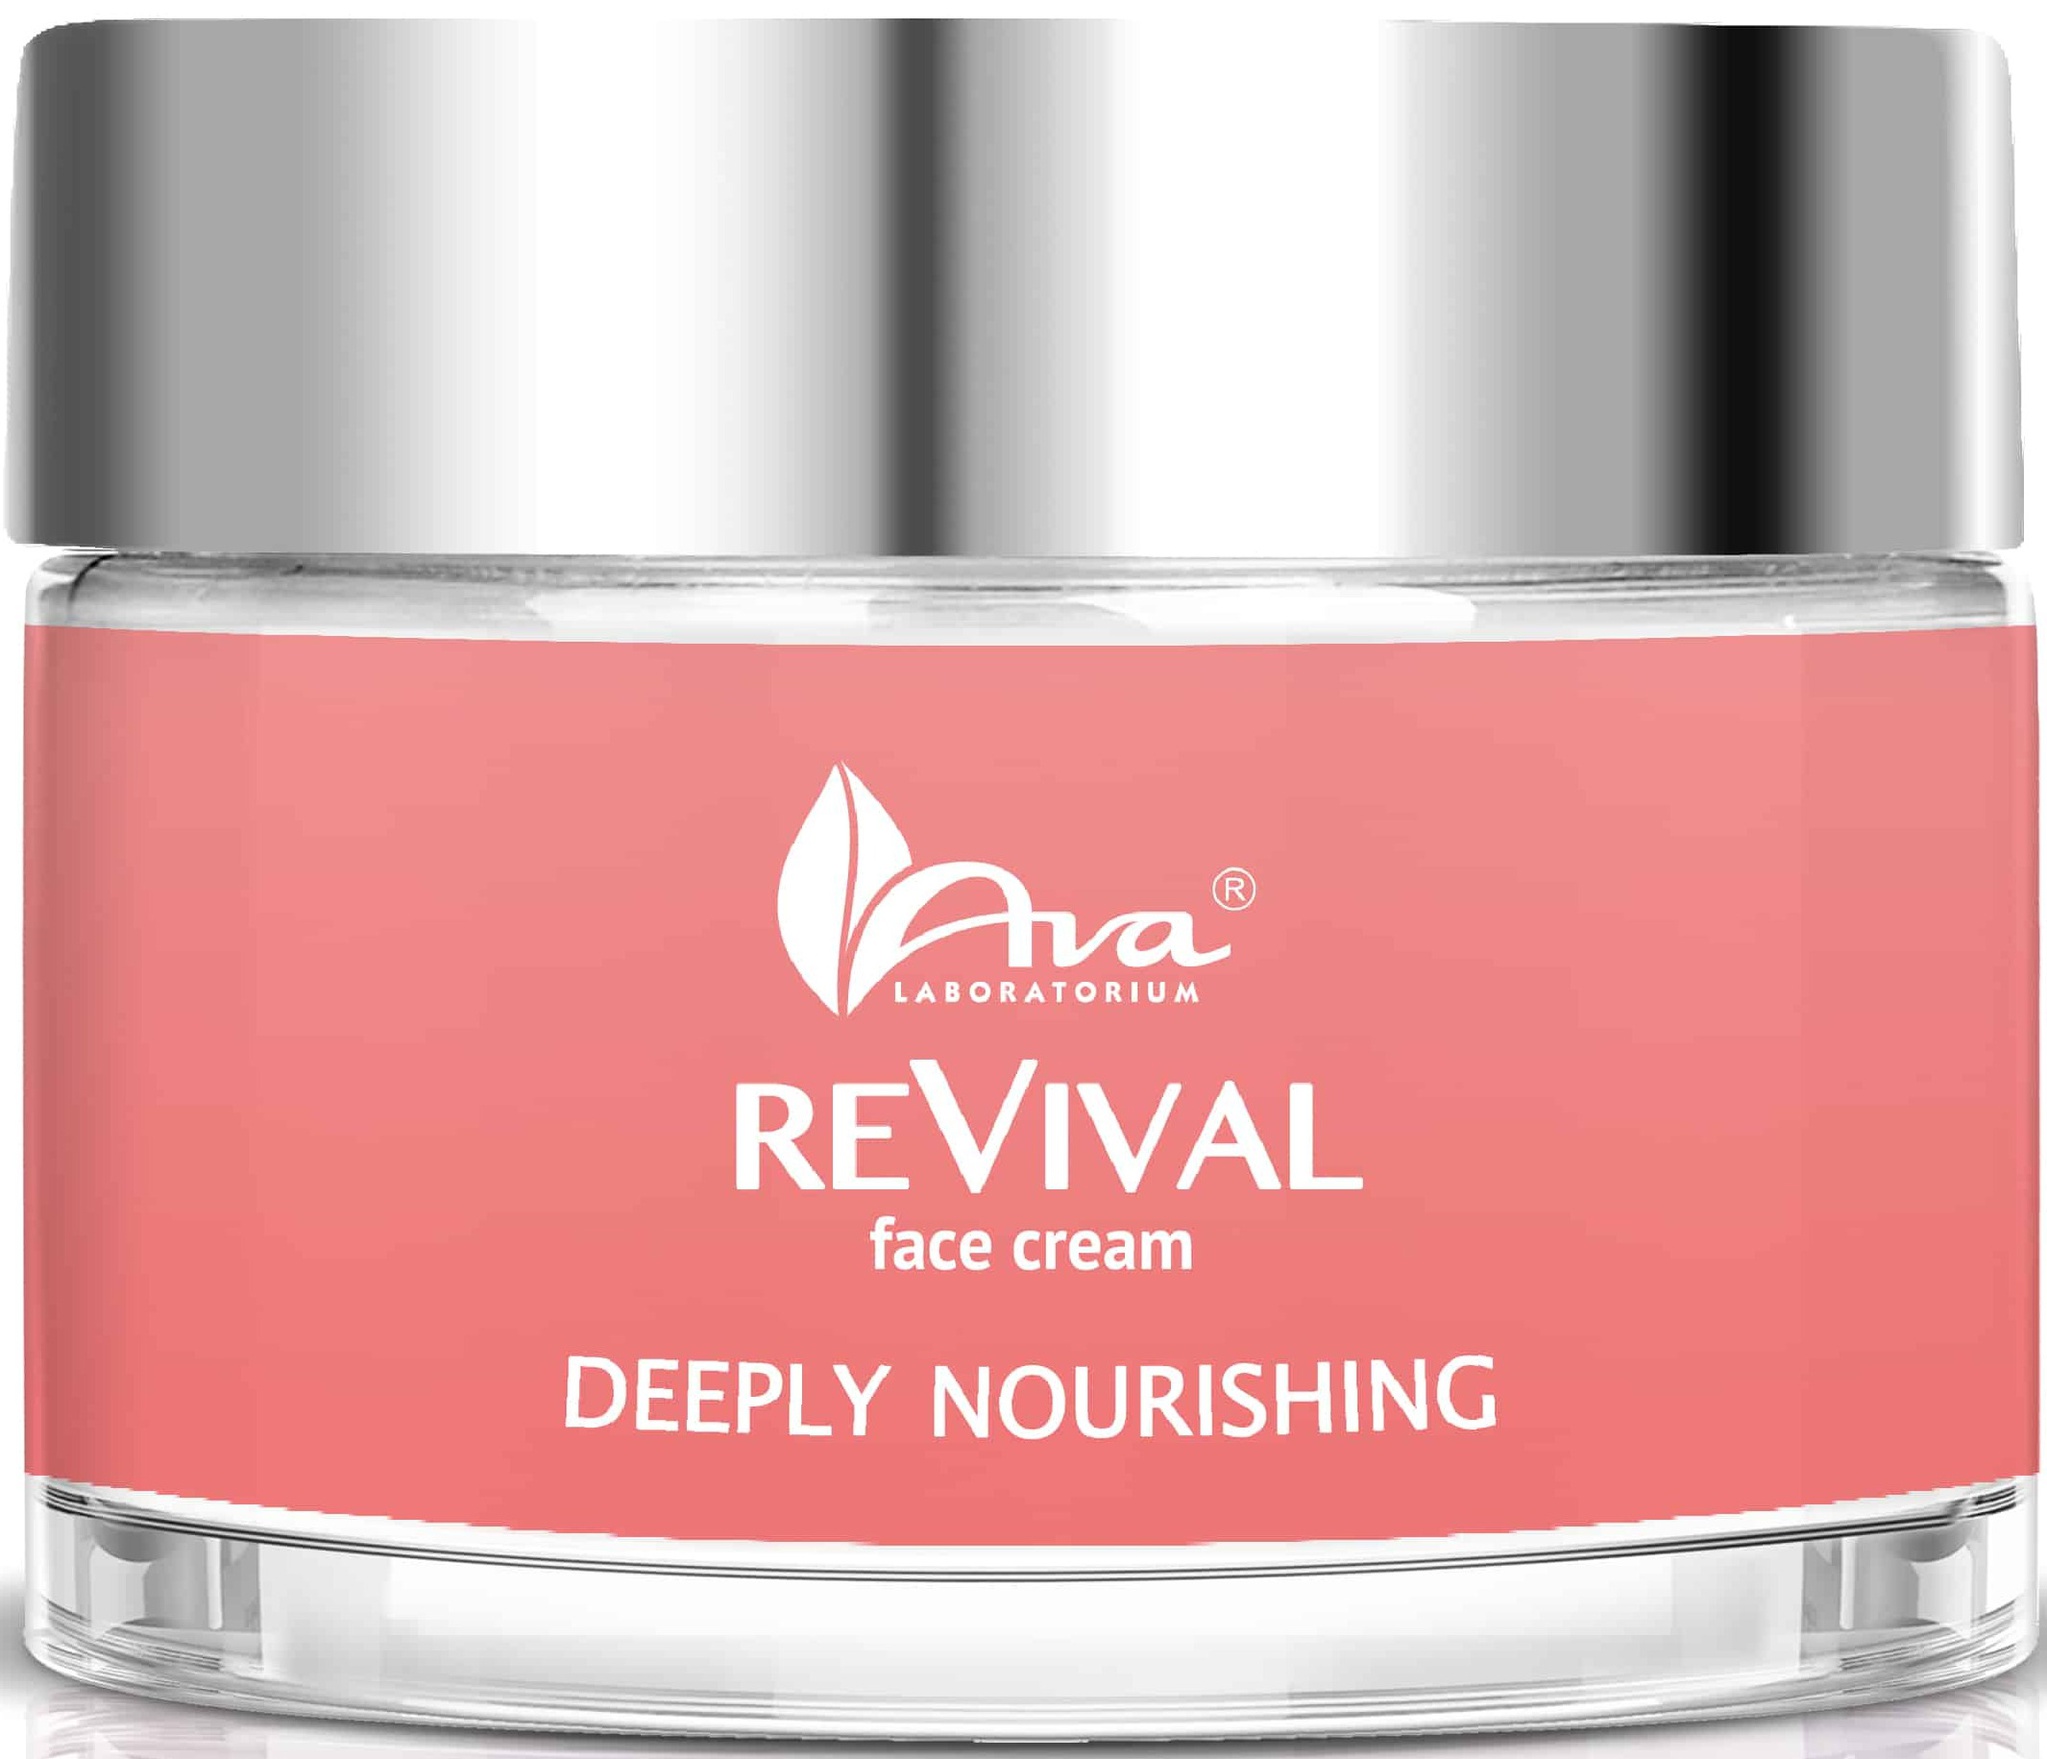 Ava Laboratorium Revival Deeply Nourishing Face Cream